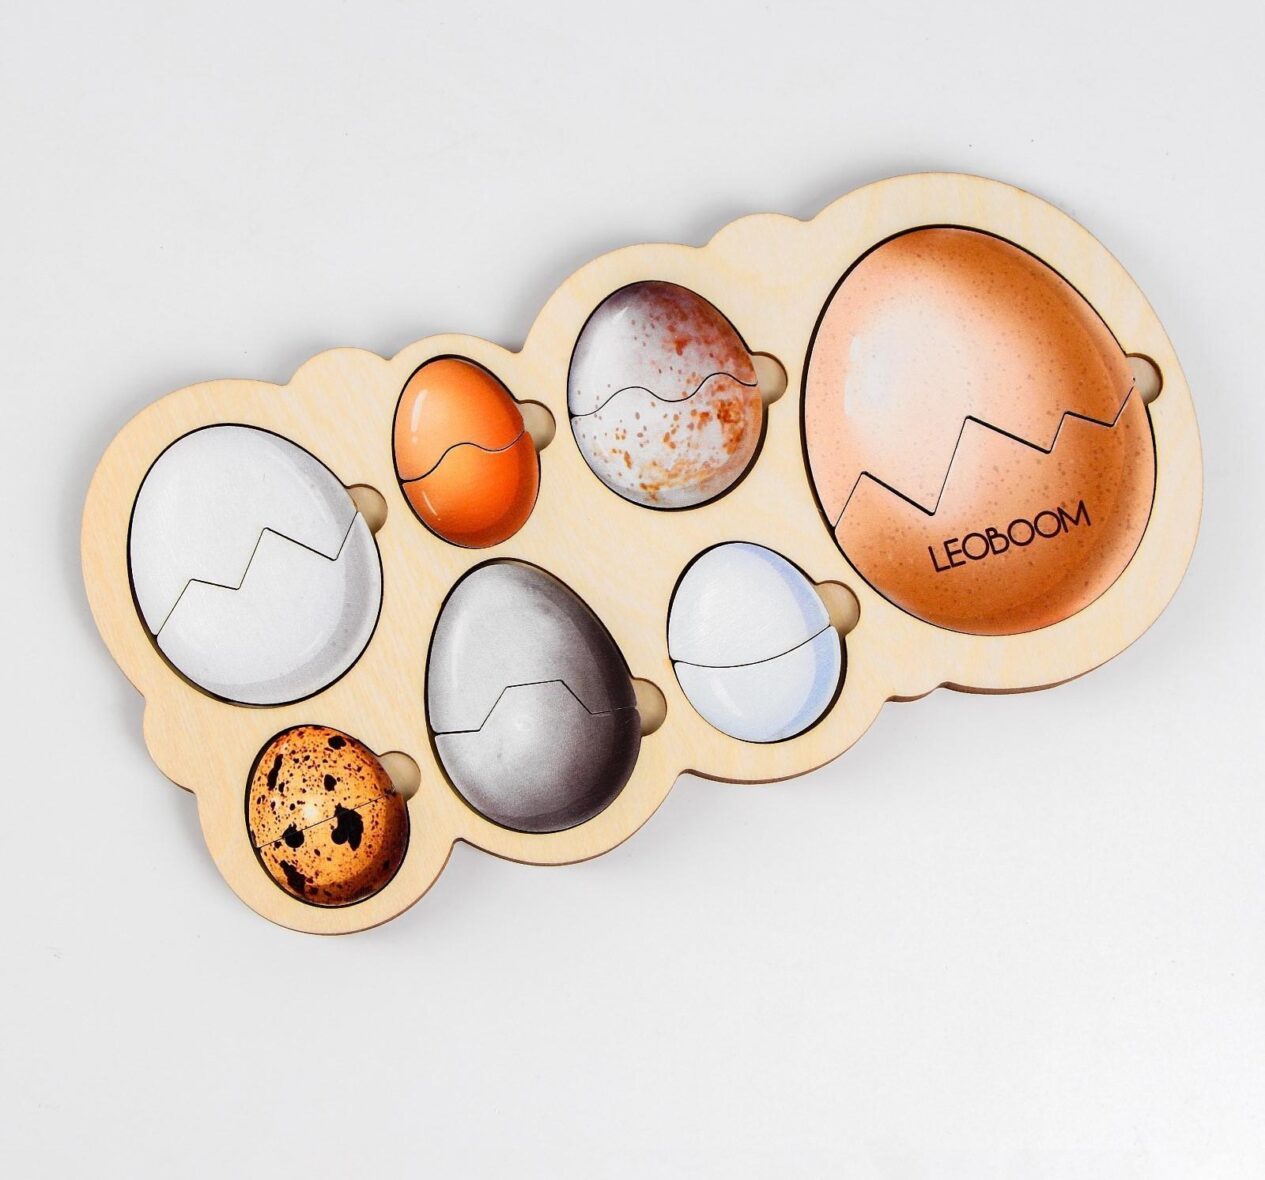 Рамка-вкладыш «Кто живет в яйце?»